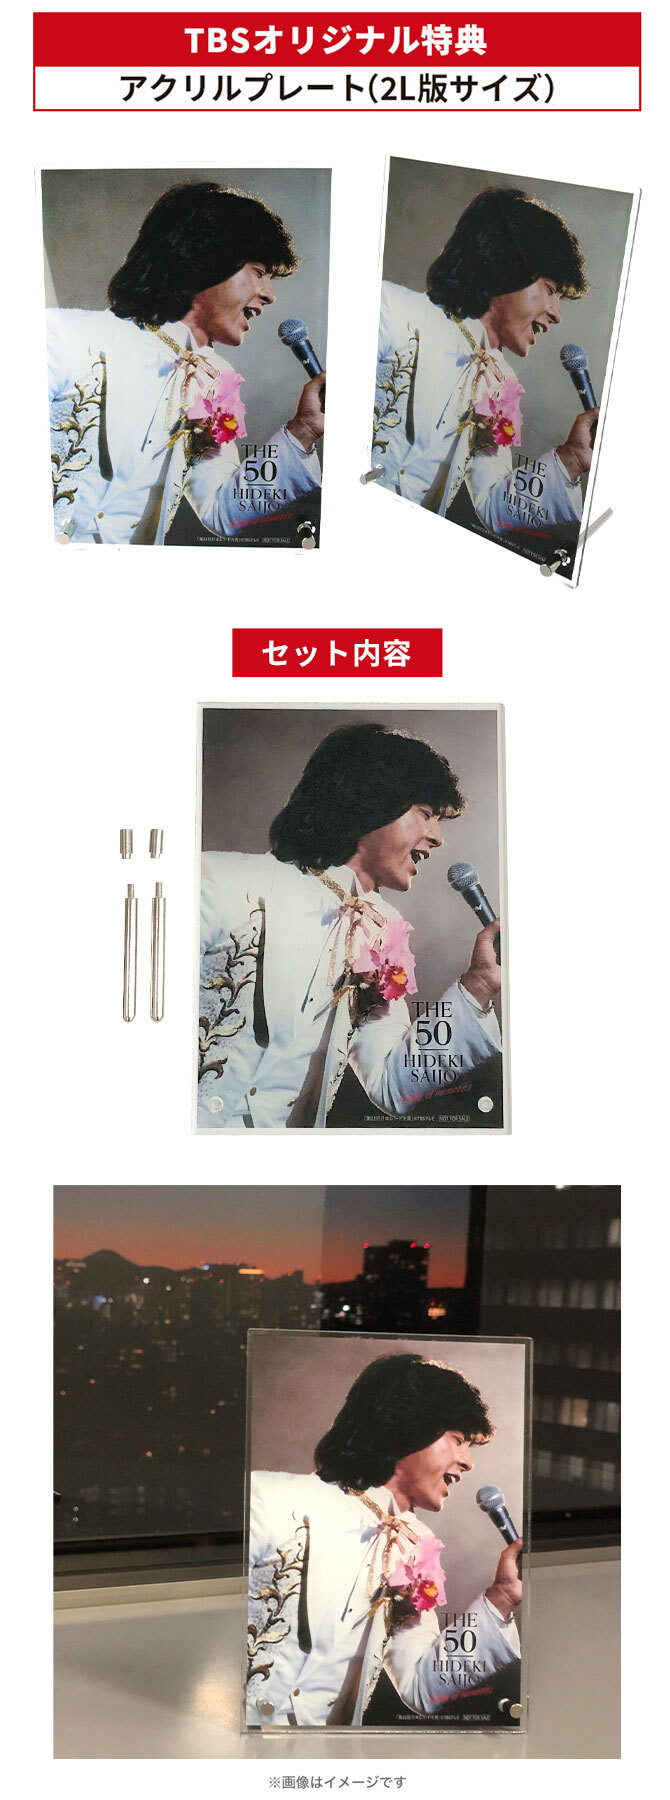 西城秀樹「THE 50 HIDEKI SAIJO song of memories」／DVD-BOX（7枚組 